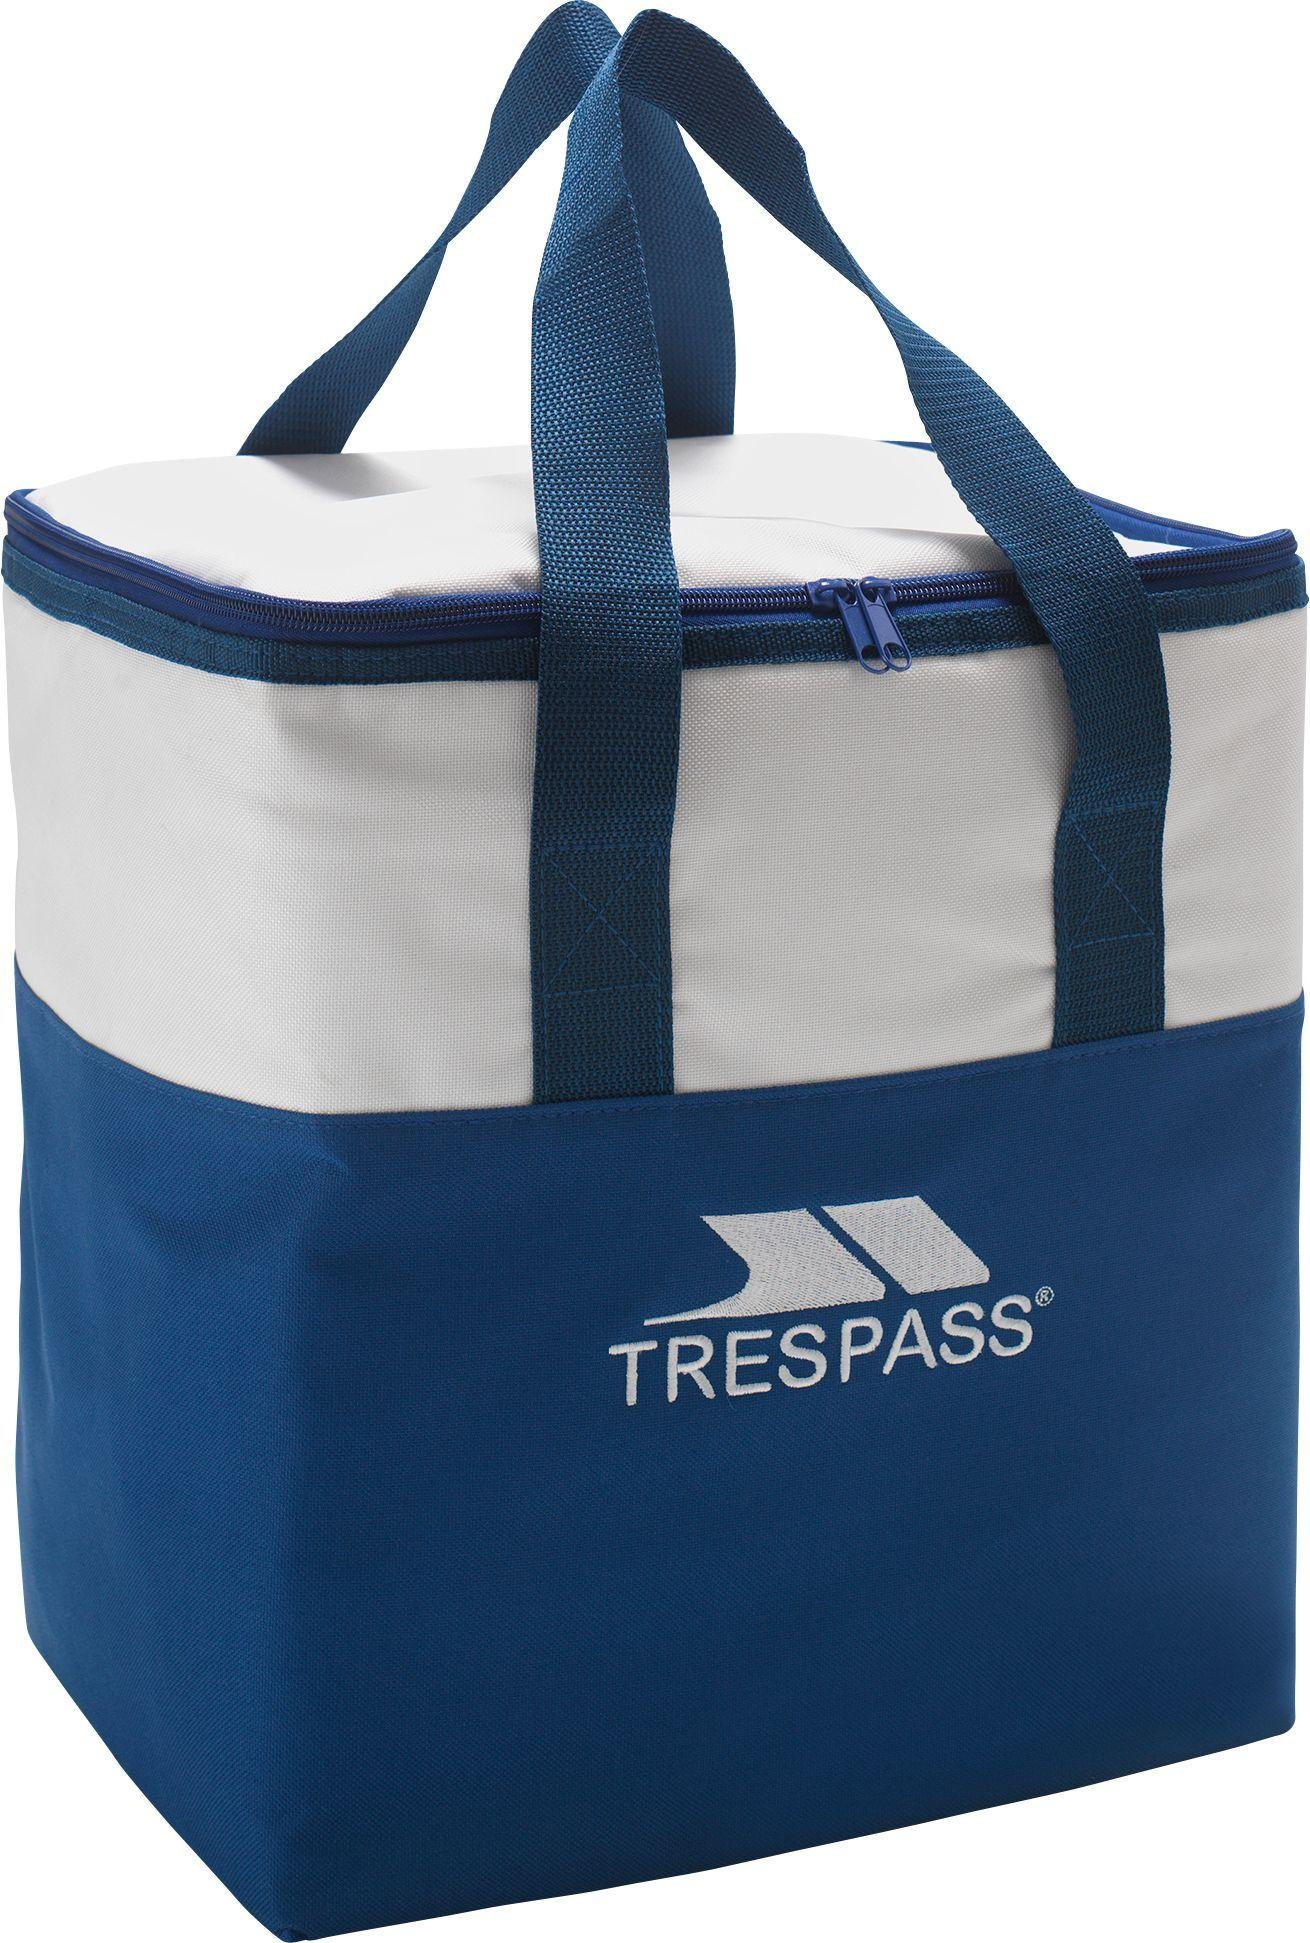 Trespass Cool Bag - 22 Litre